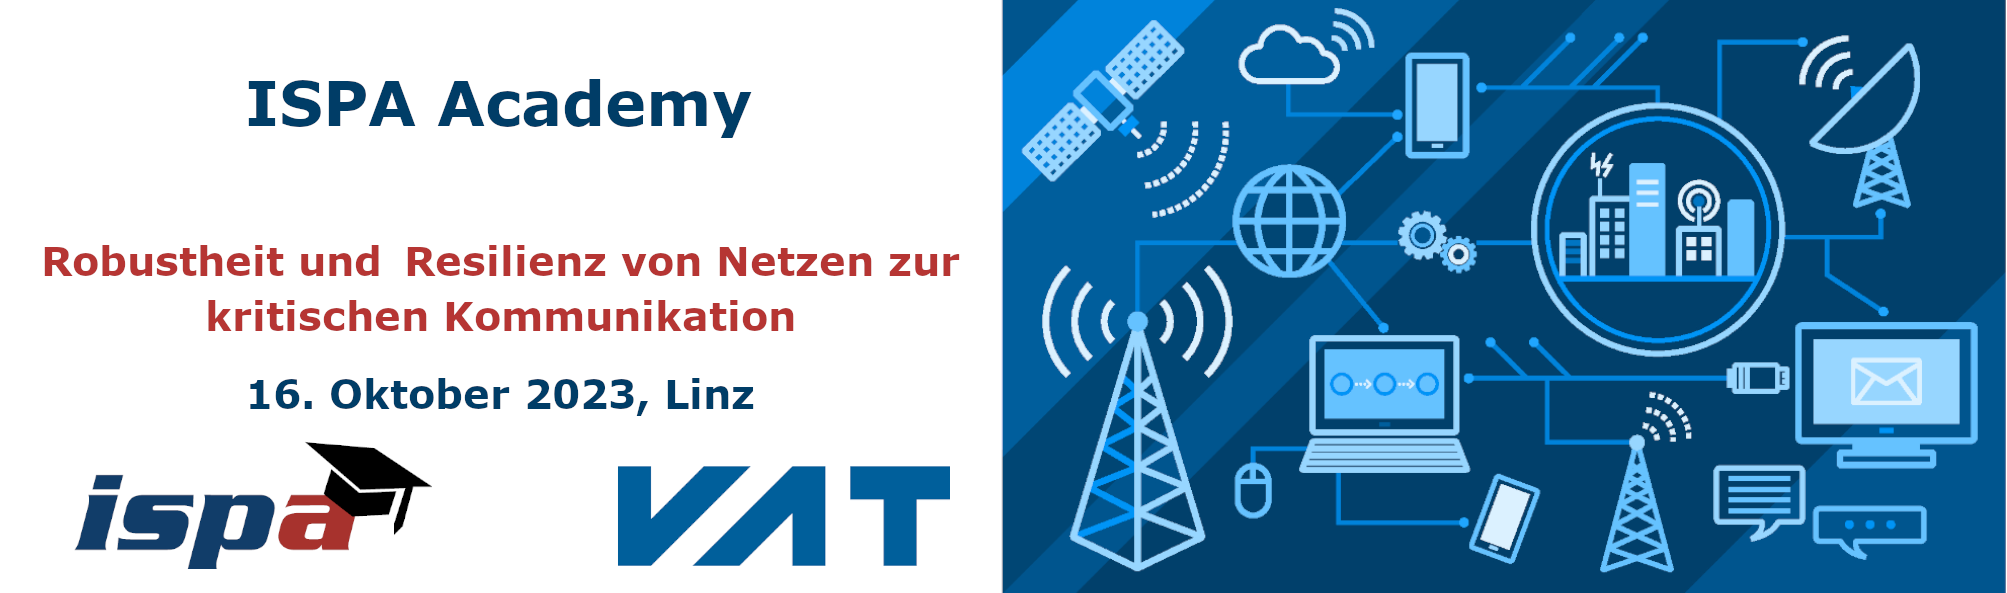 ISPA Academy Robustheit und Resilienz von Netzen zur kritischen Kommunikation, 16. Oktober 2023, Linz